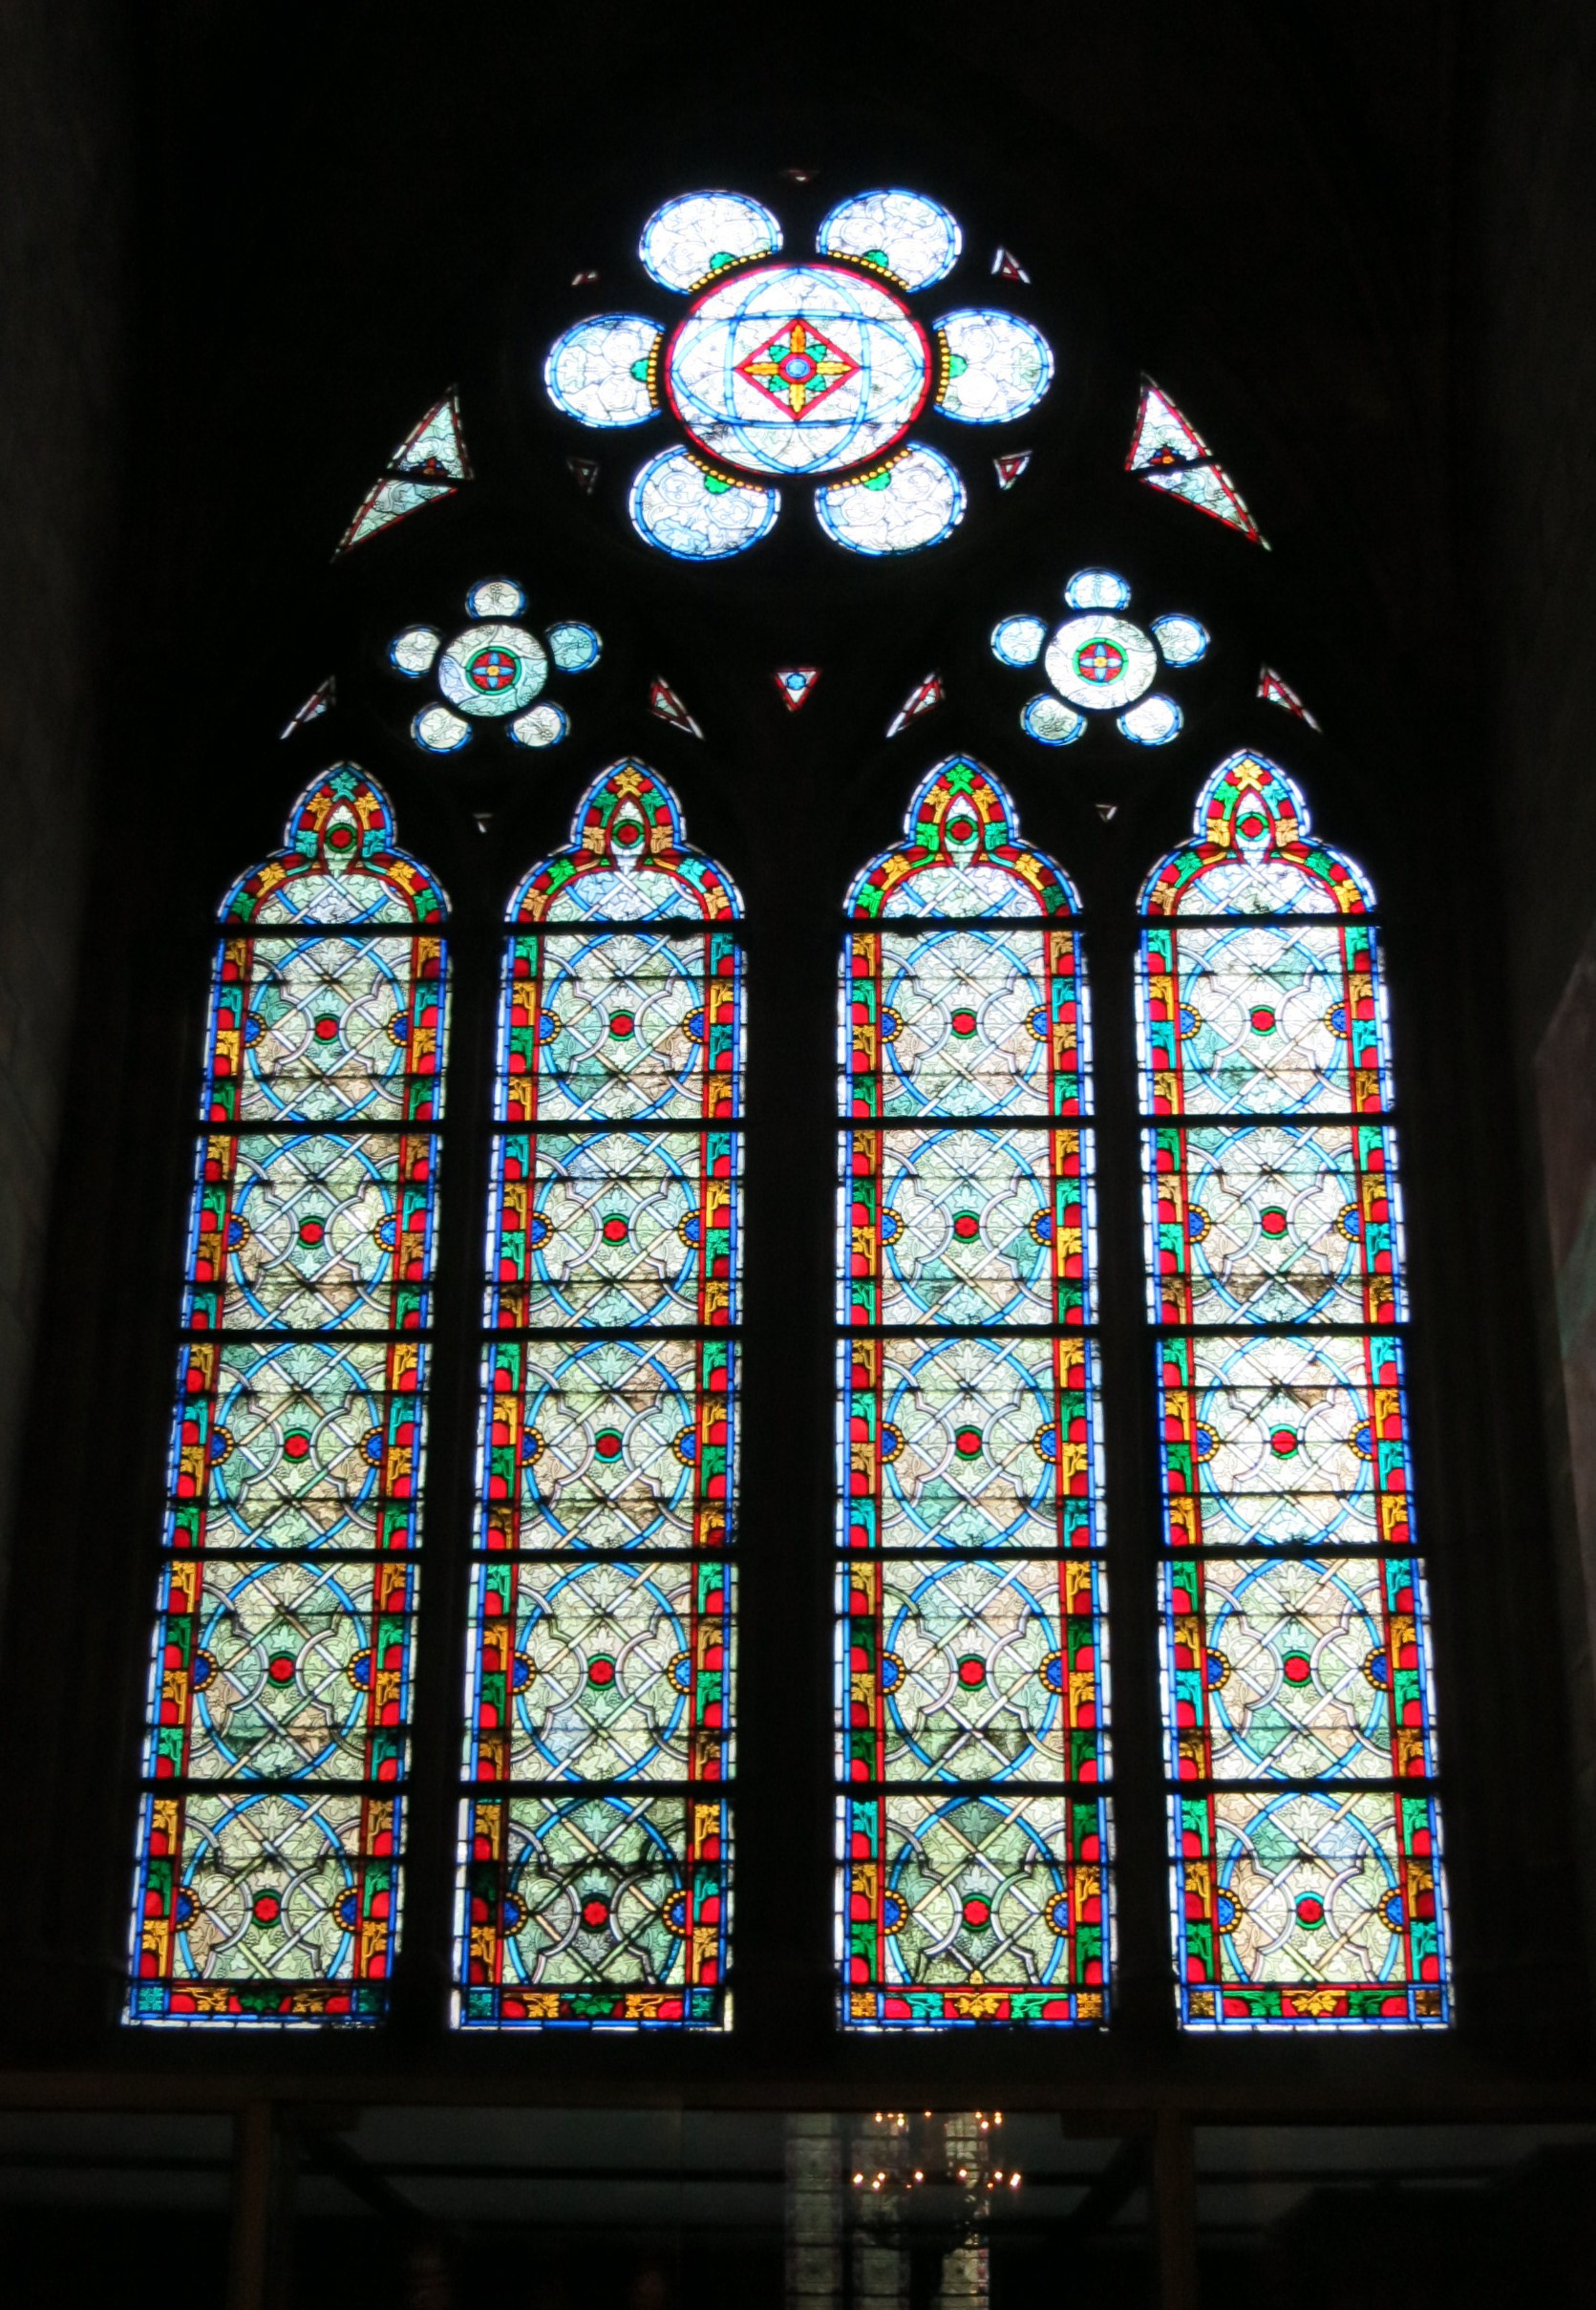 Notre-Dame de Paris - Stained glass windows